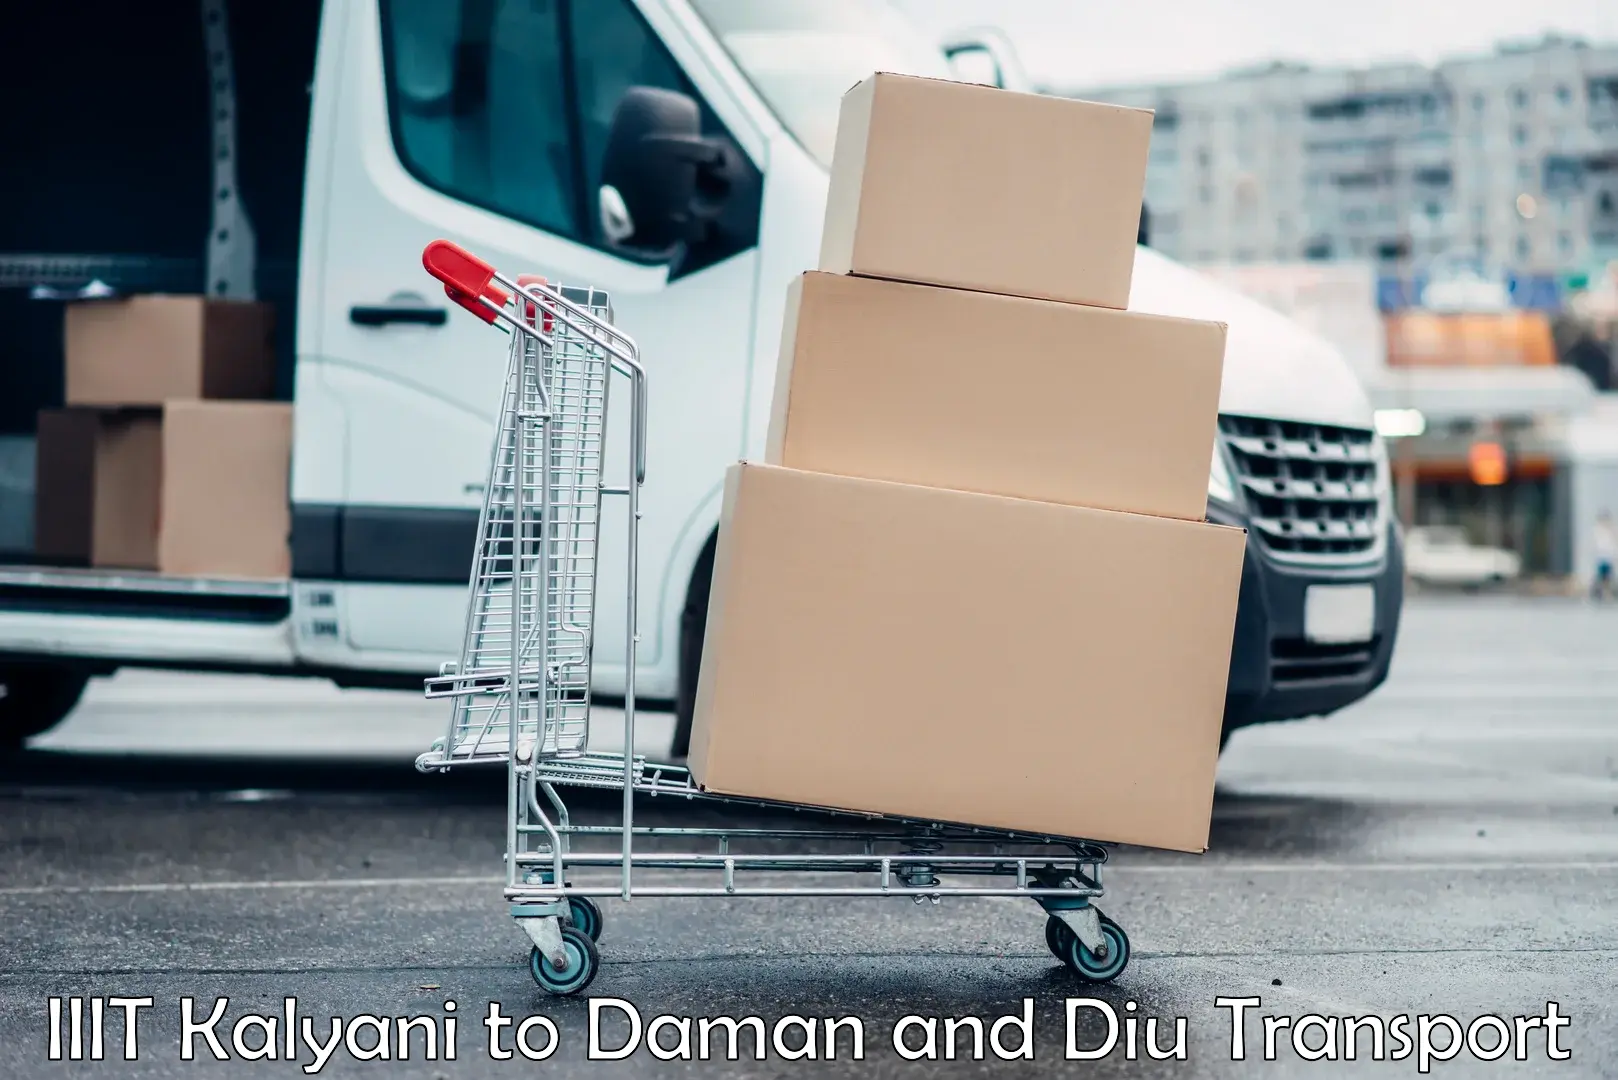 Cargo transport services IIIT Kalyani to Daman